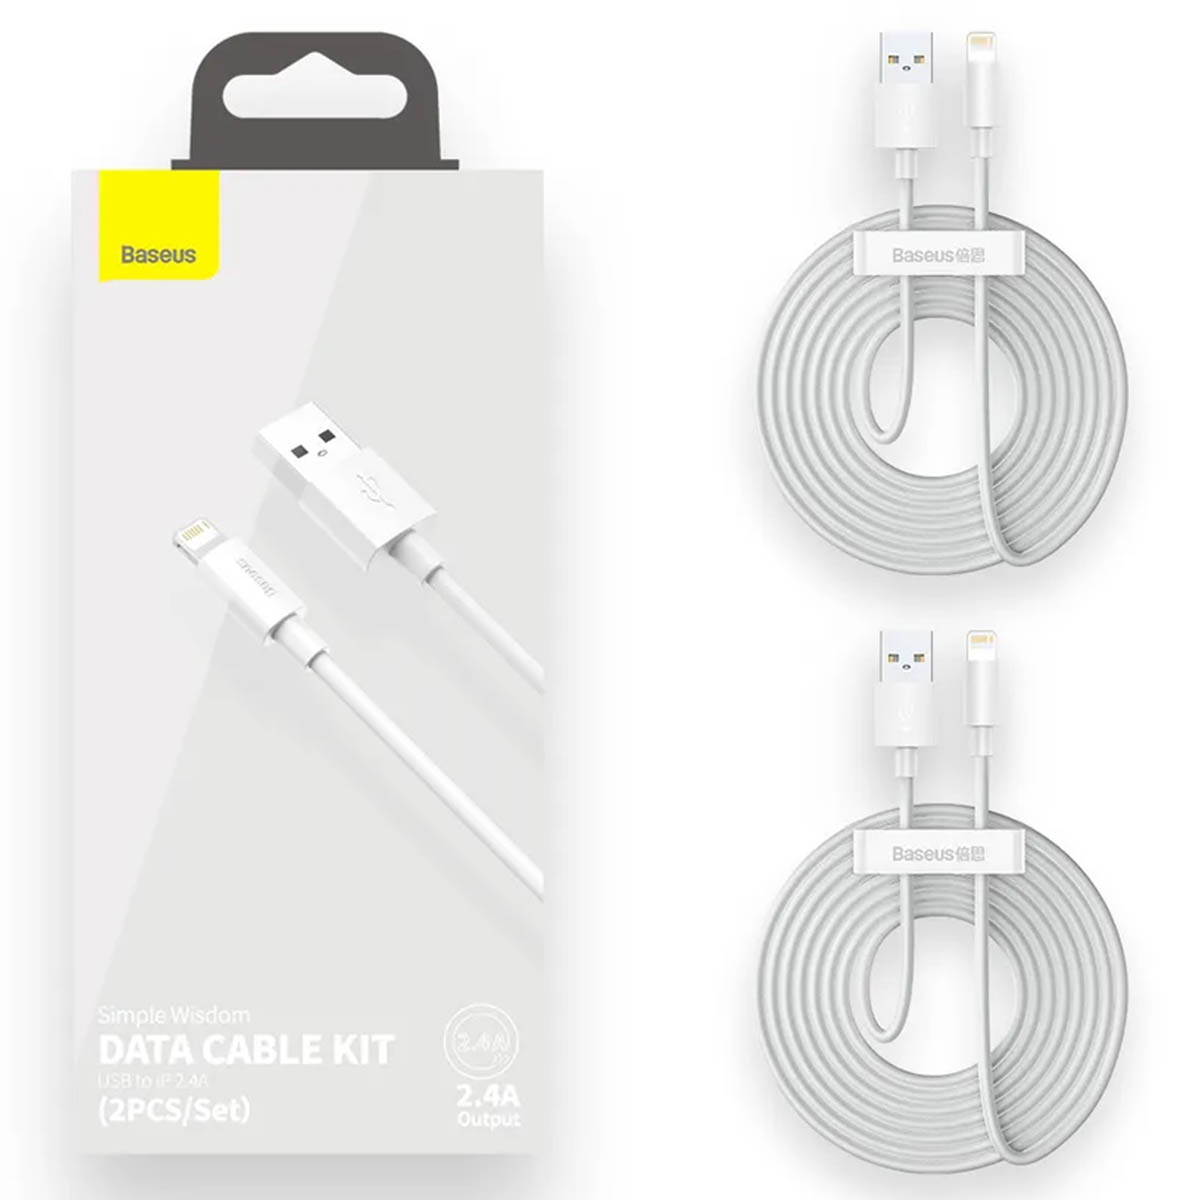 Кабель BASEUS Simple Wisdom Data Cable Kit Lightning 8-pin, 2.4A, длина 1.5 метра, (Комплект из 2 шт), цвет белый